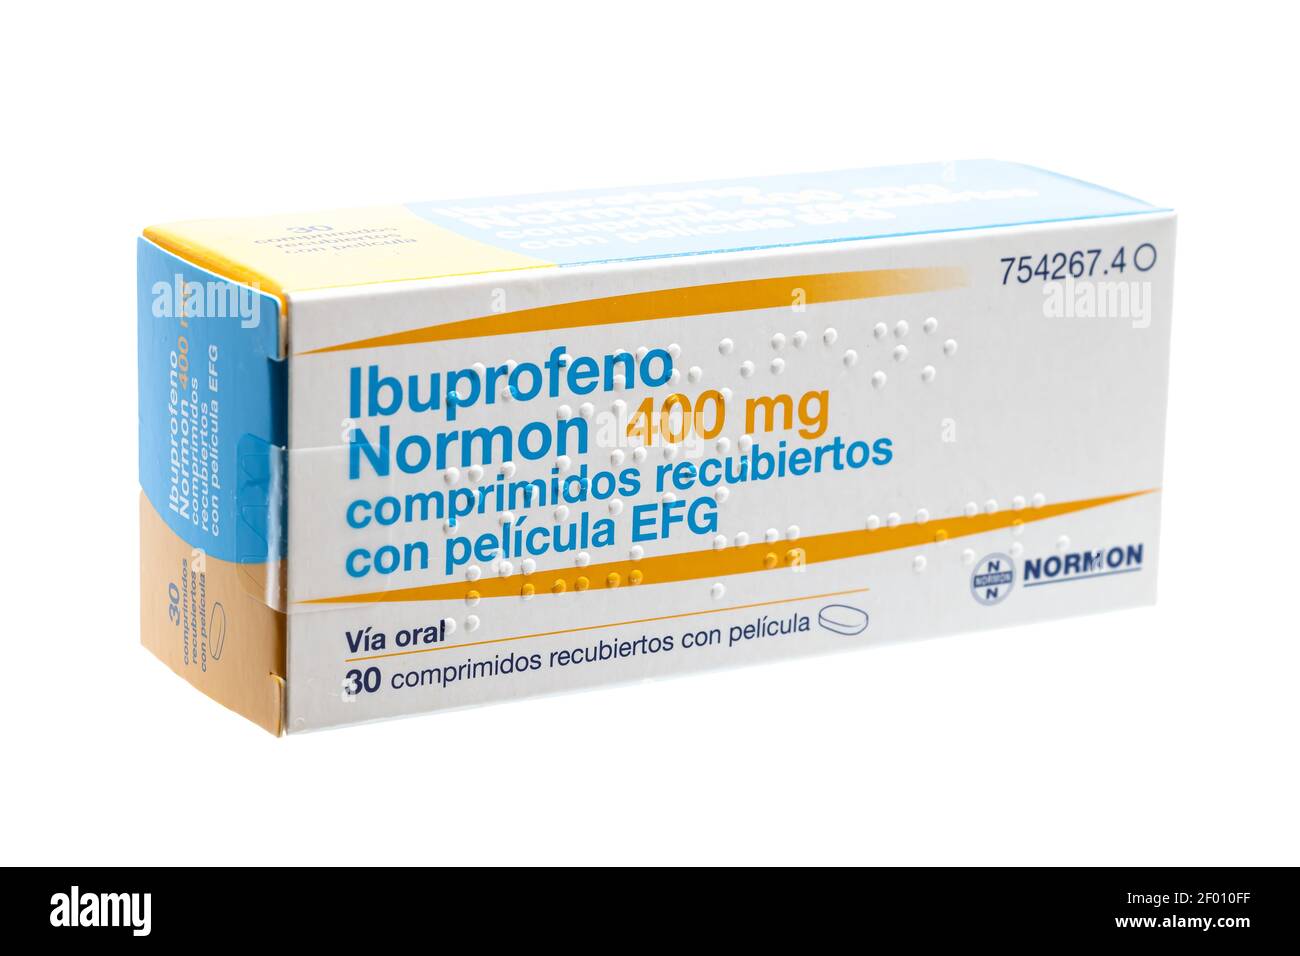 Huelva, Spanien - 6. März 2021: Spanische Box von Ibuprofen, ist ein Medikament  entzündungshemmend. Verwendet für Schmerzen, Fieber und Entzündungen,  schmerzhafte Menst Stockfotografie - Alamy